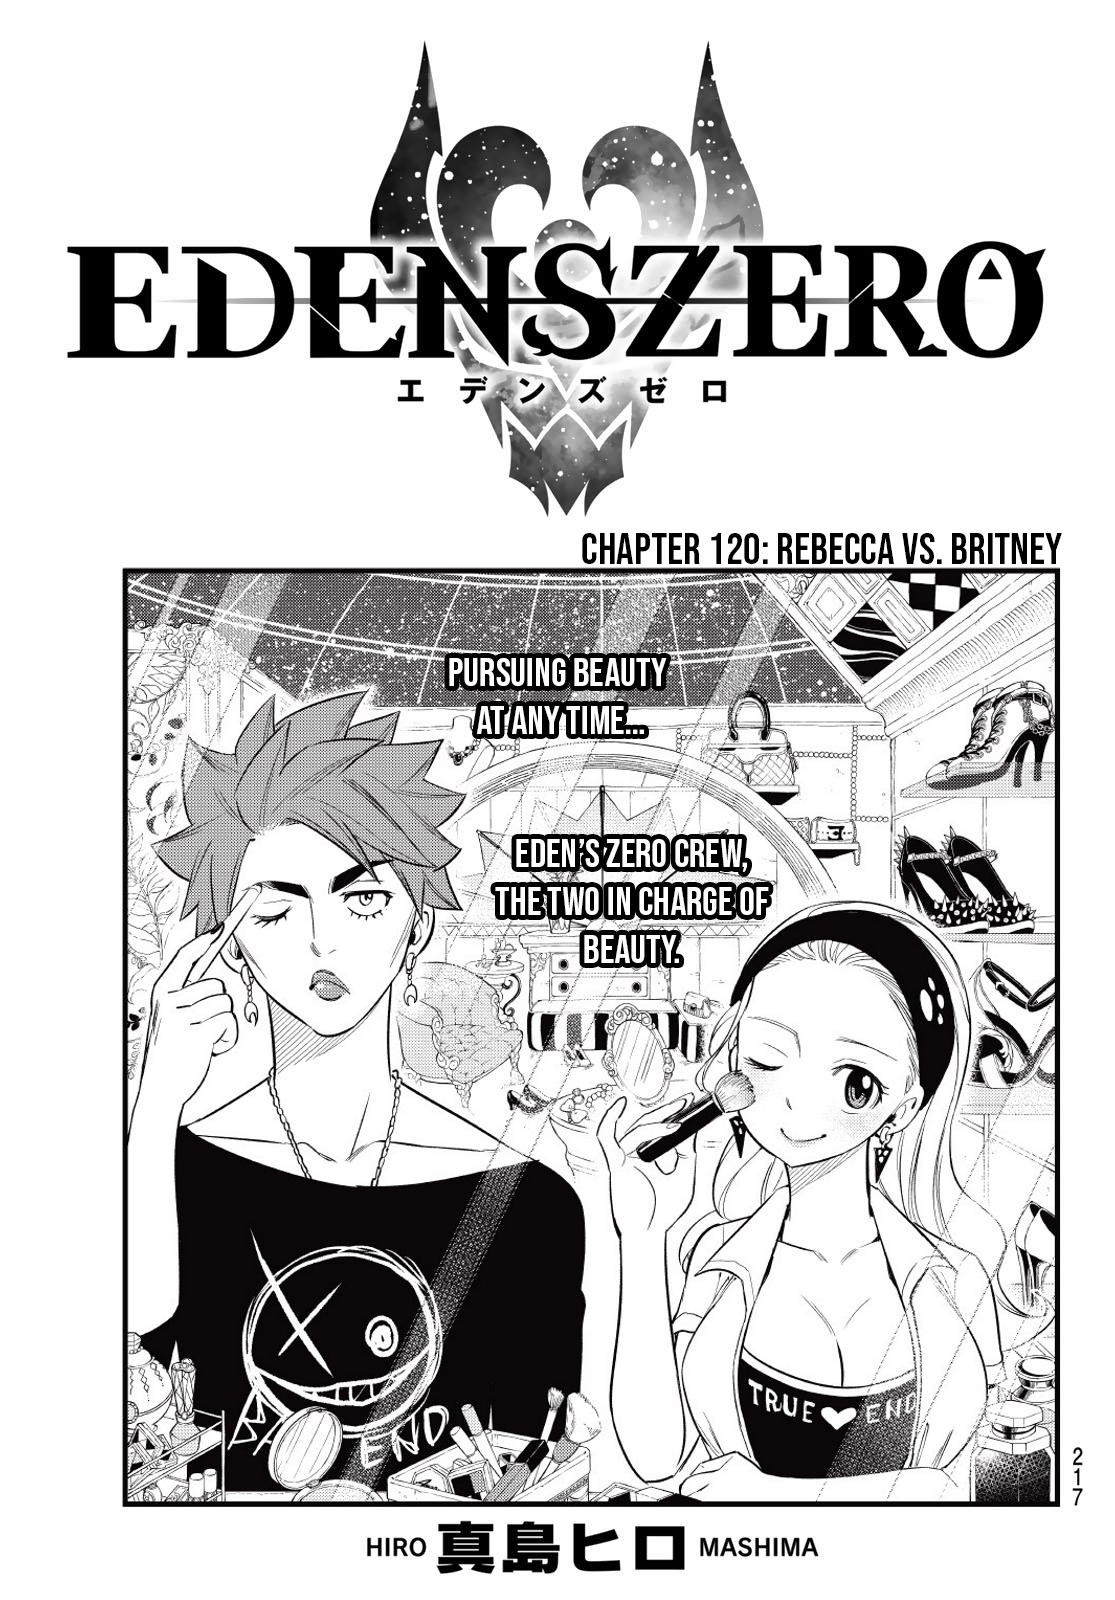 Edens Zero Crew